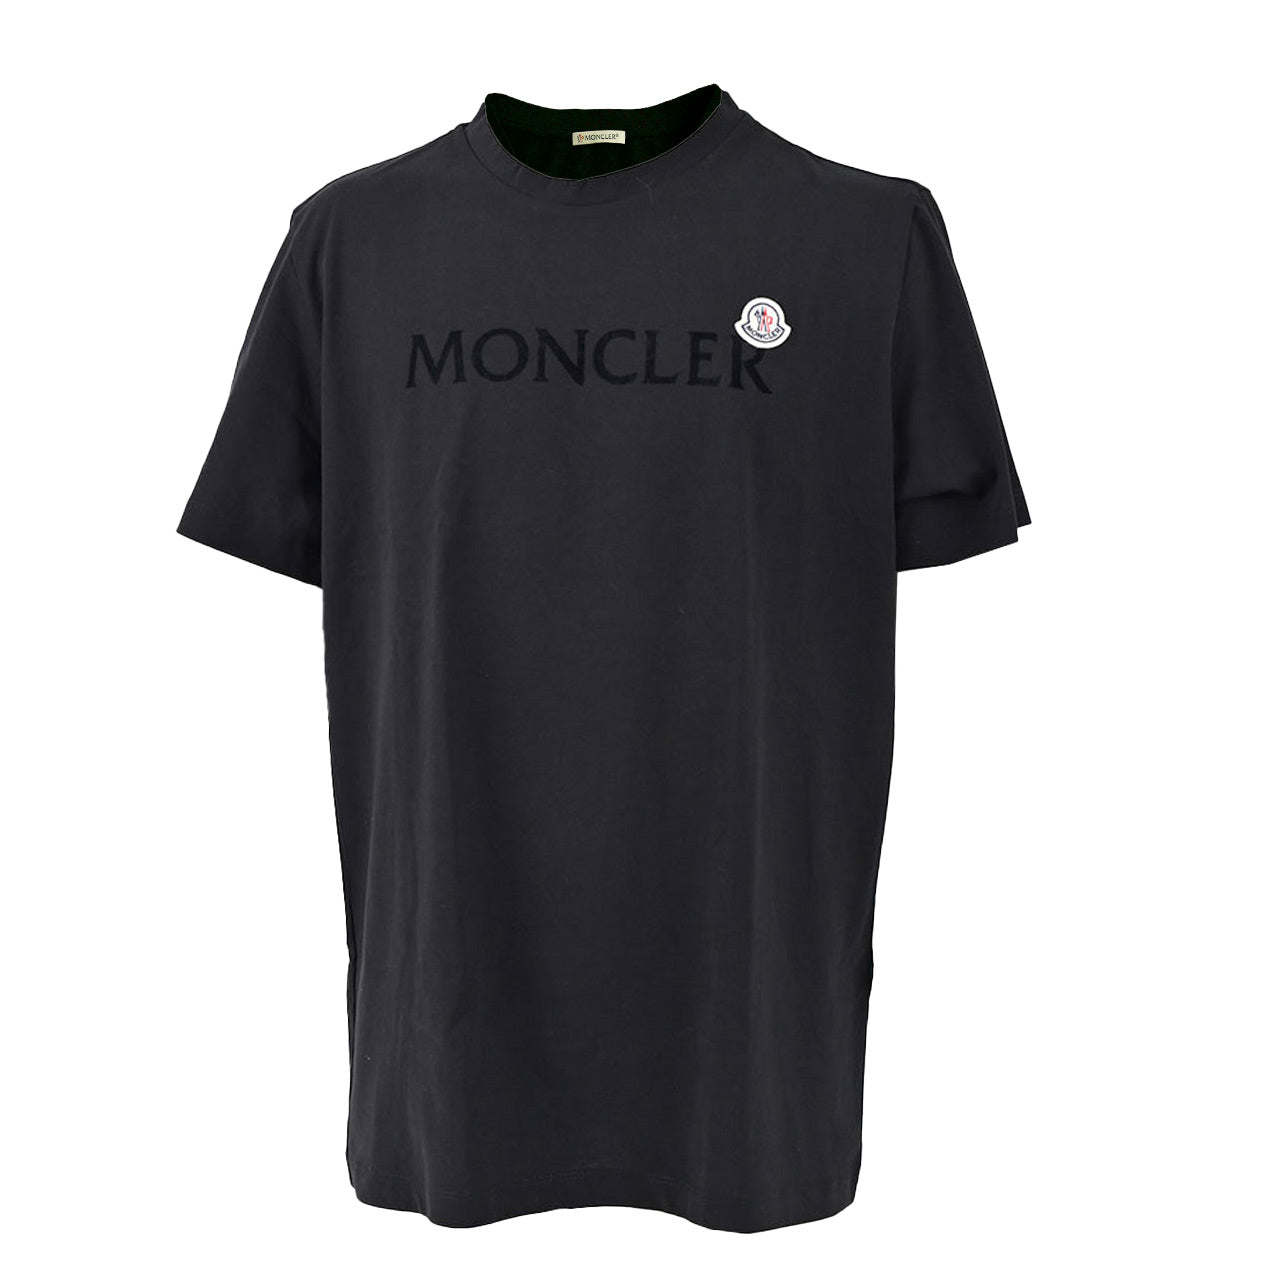 ★モンクレール MONCLER Tシャツ 8C000 22 8390T 999 ブラック 年秋冬 メンズ